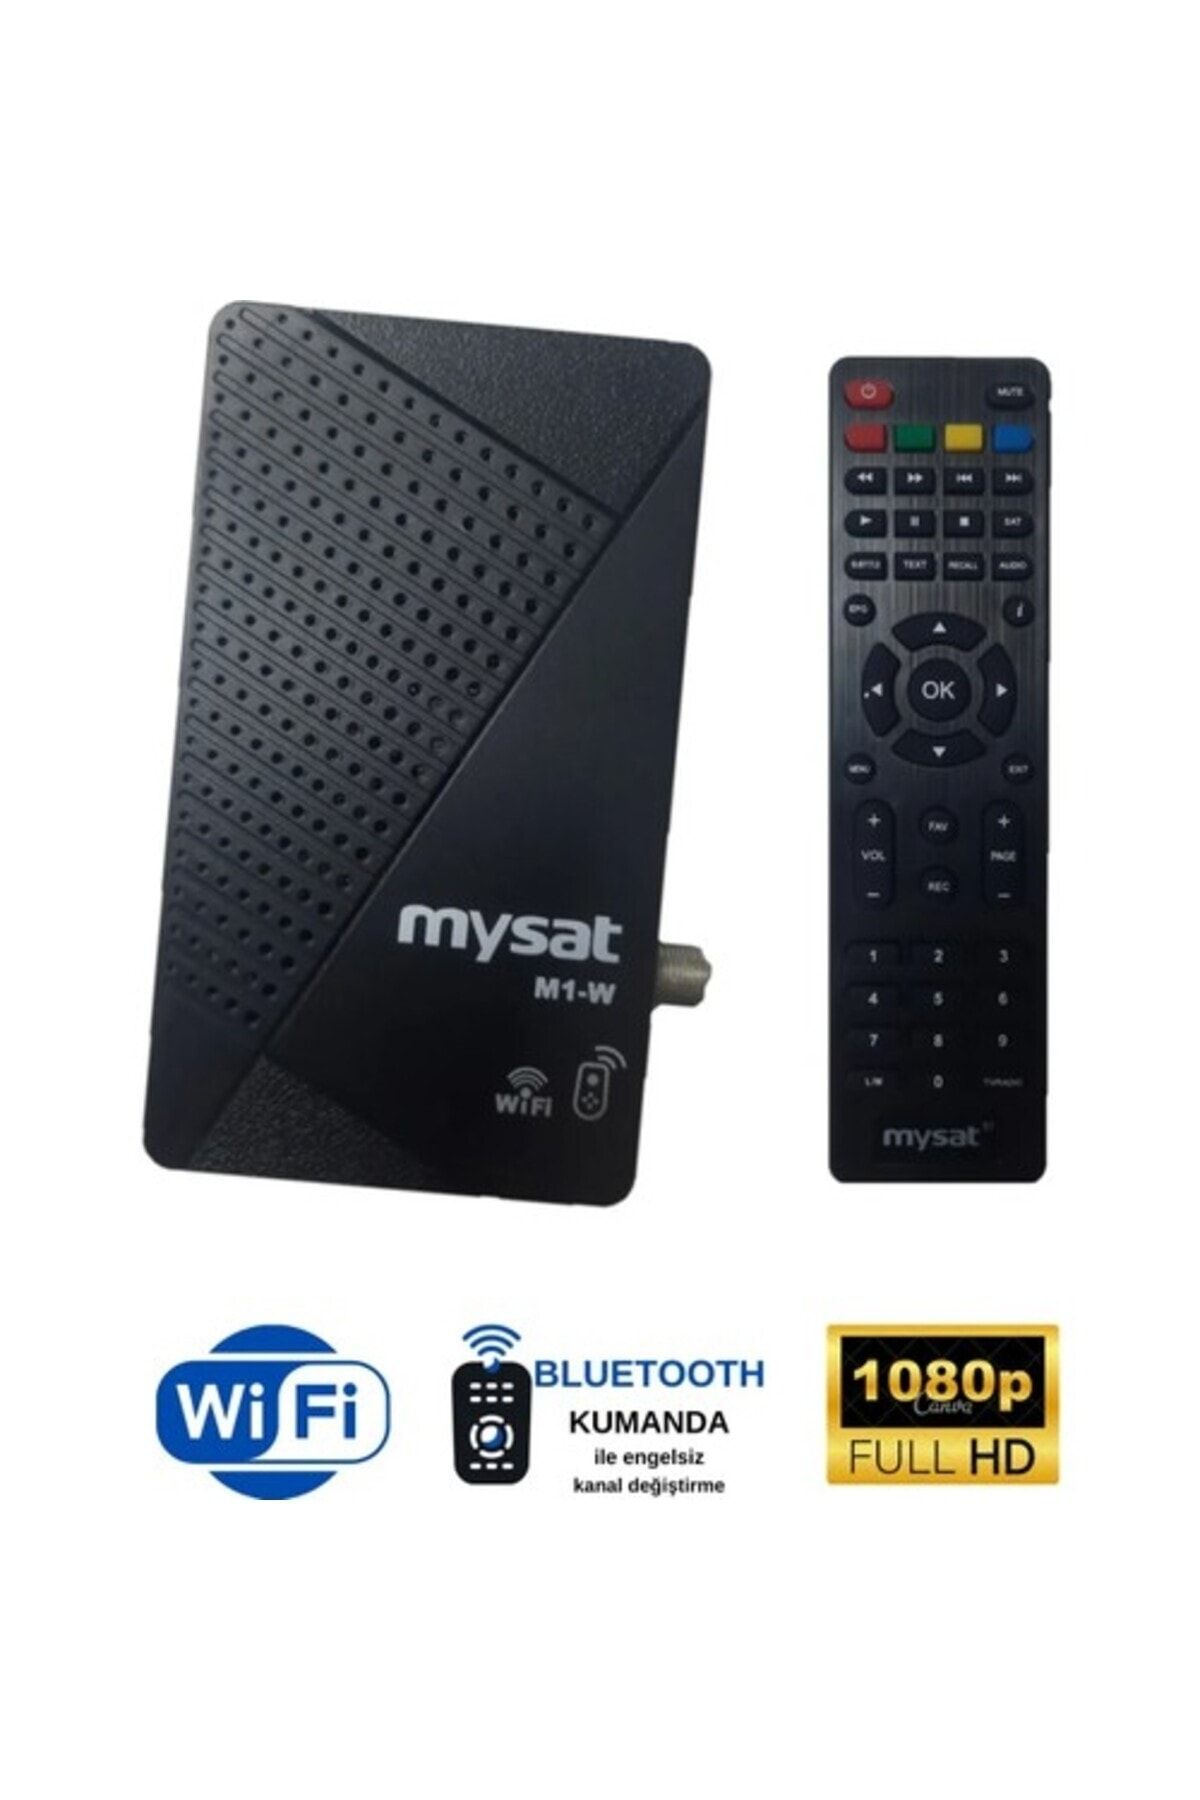 MYSAT M1-W Youtube, Wifi Full Hd + Bluetooth Kumanda Dijital Uydu Alıcı